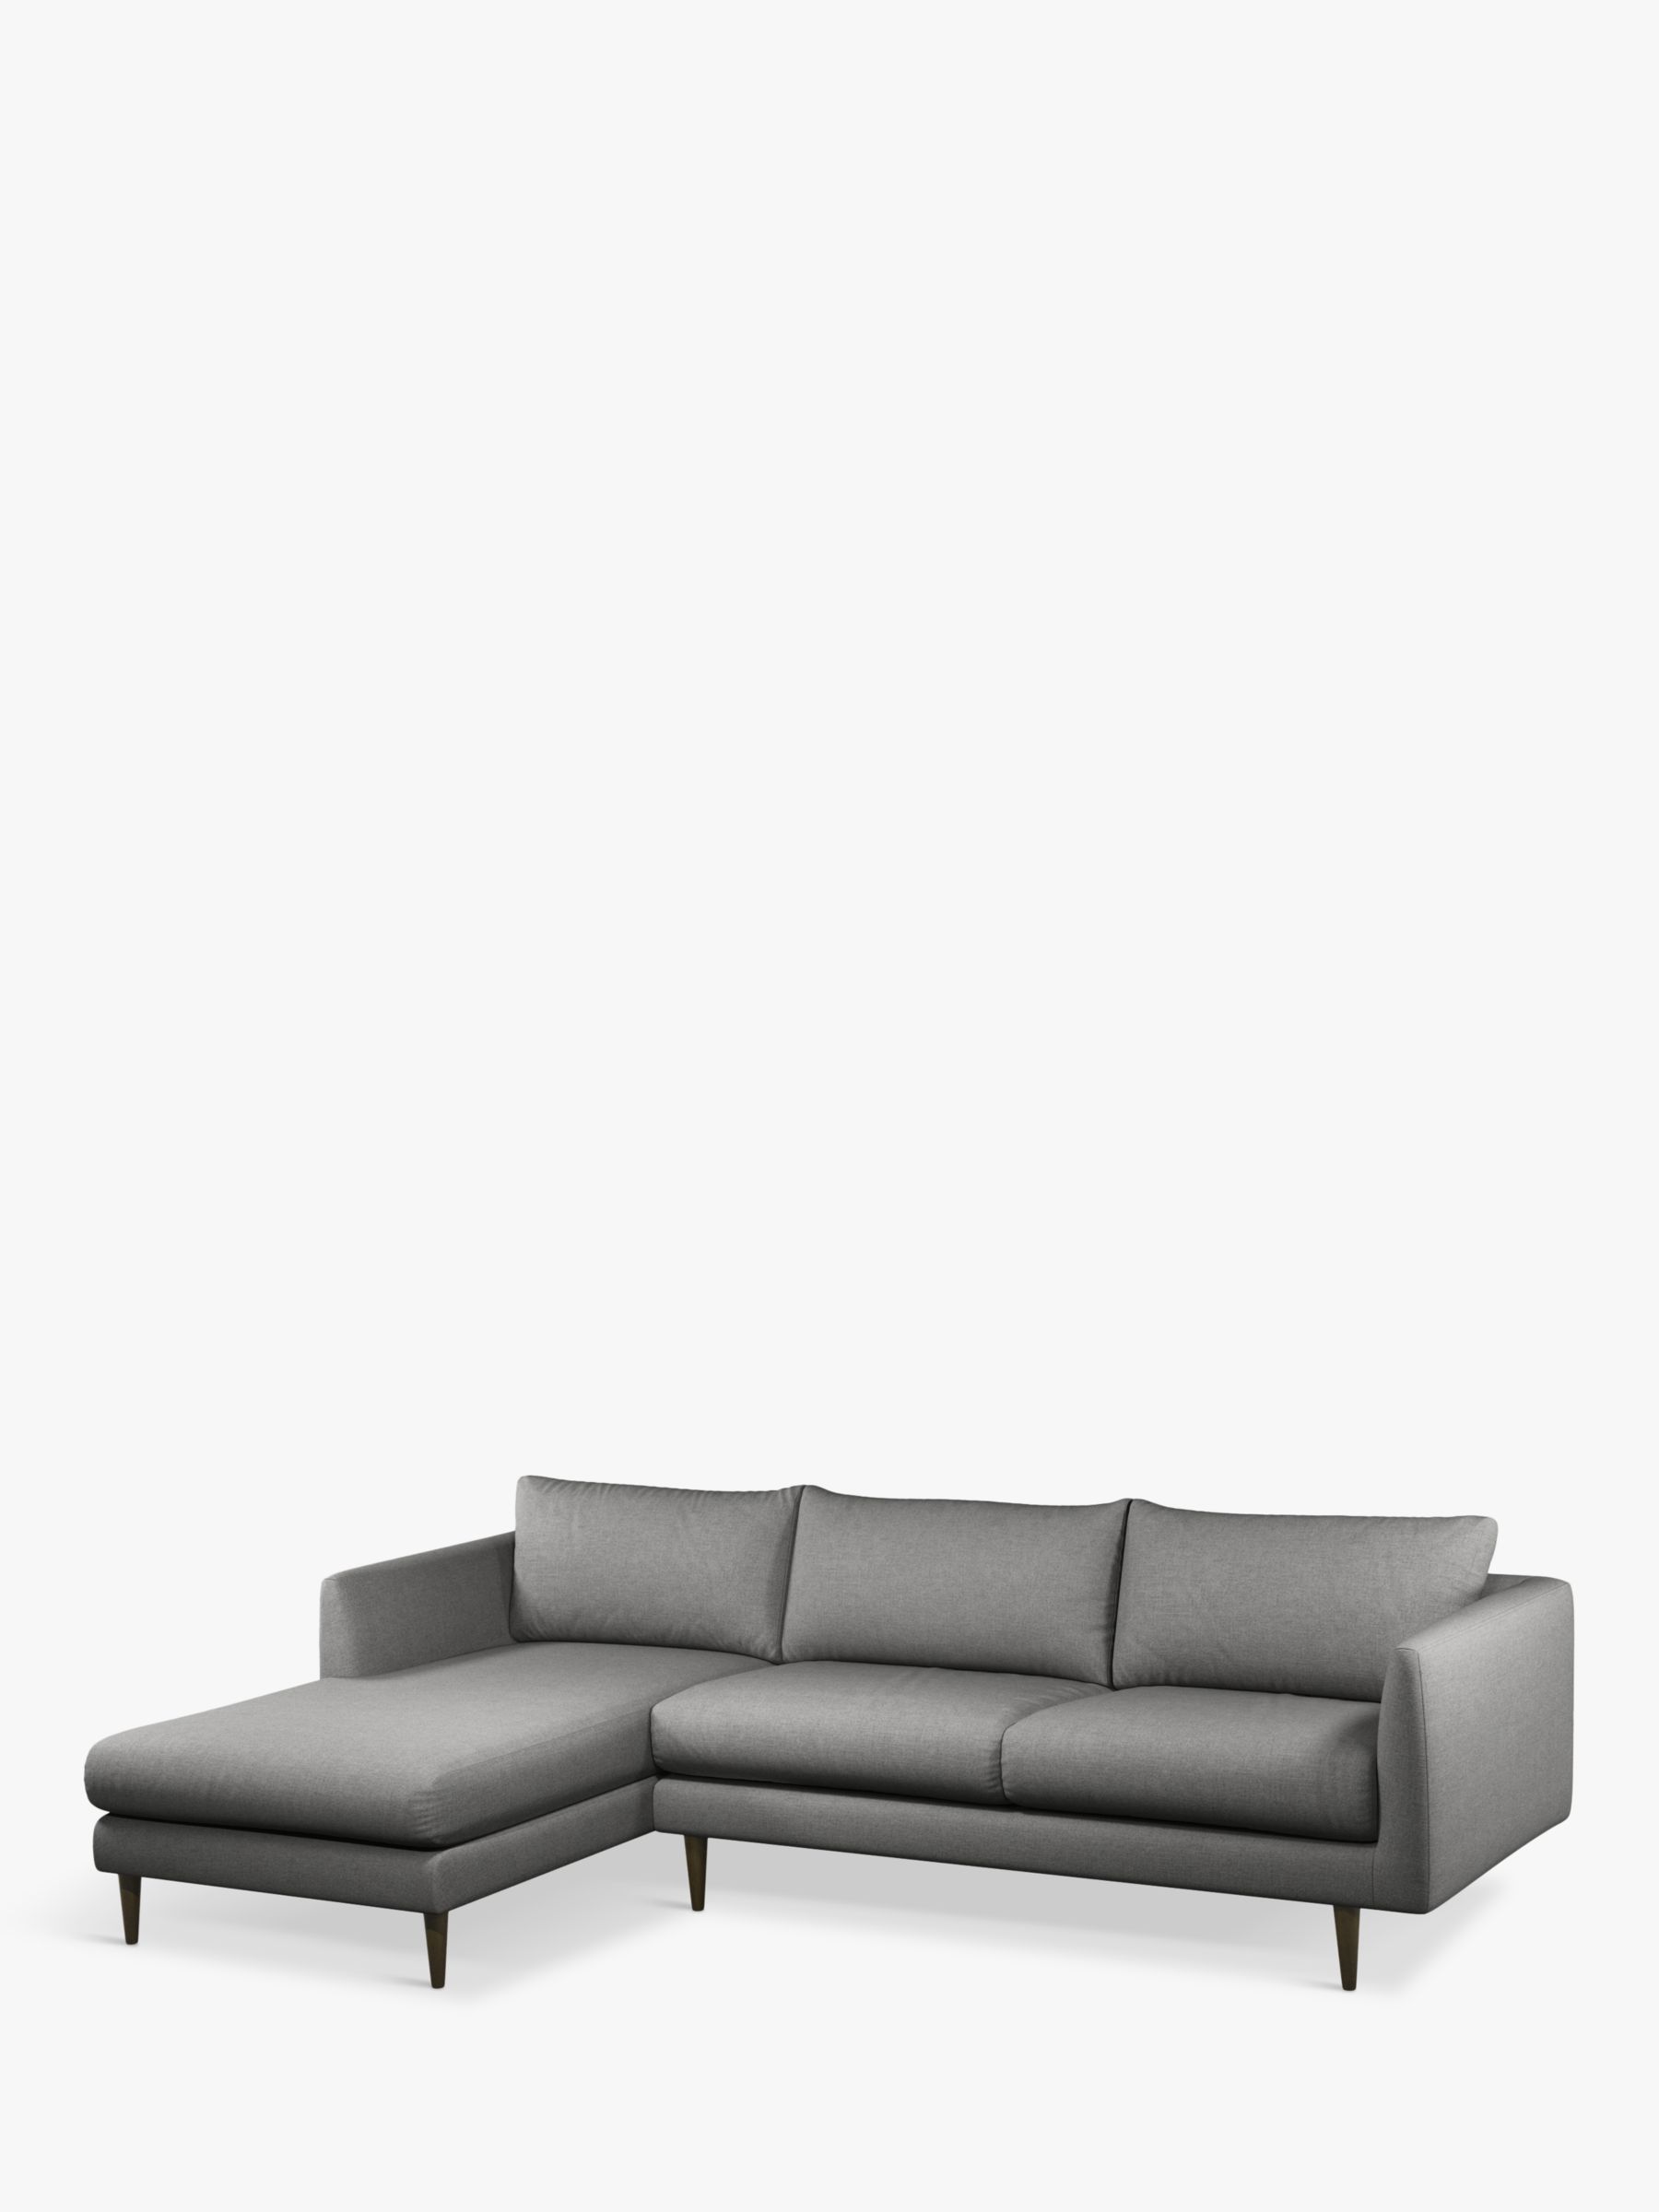 Latimer Range, John Lewis + Swoon Latimer Large 3 Seater LHF Chaise End Sofa, Dark Leg, Nickel Weave